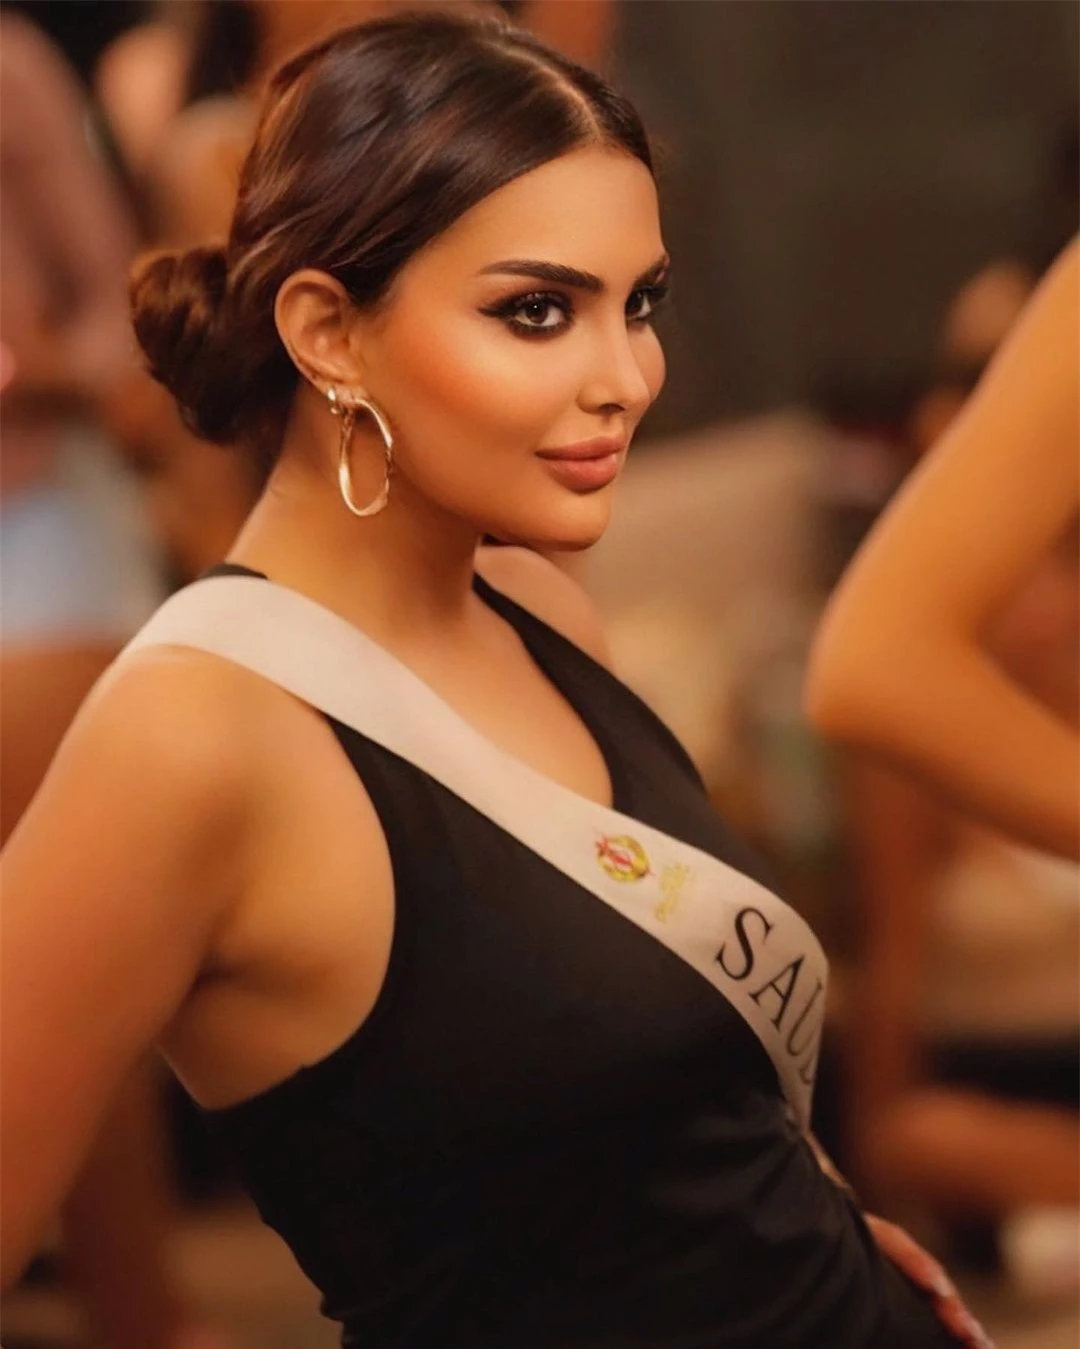 Nhan sắc gây tranh cãi của người đẹp Saudi Arabia đầu tiên thi Hoa hậu Hoàn vũ ảnh 22